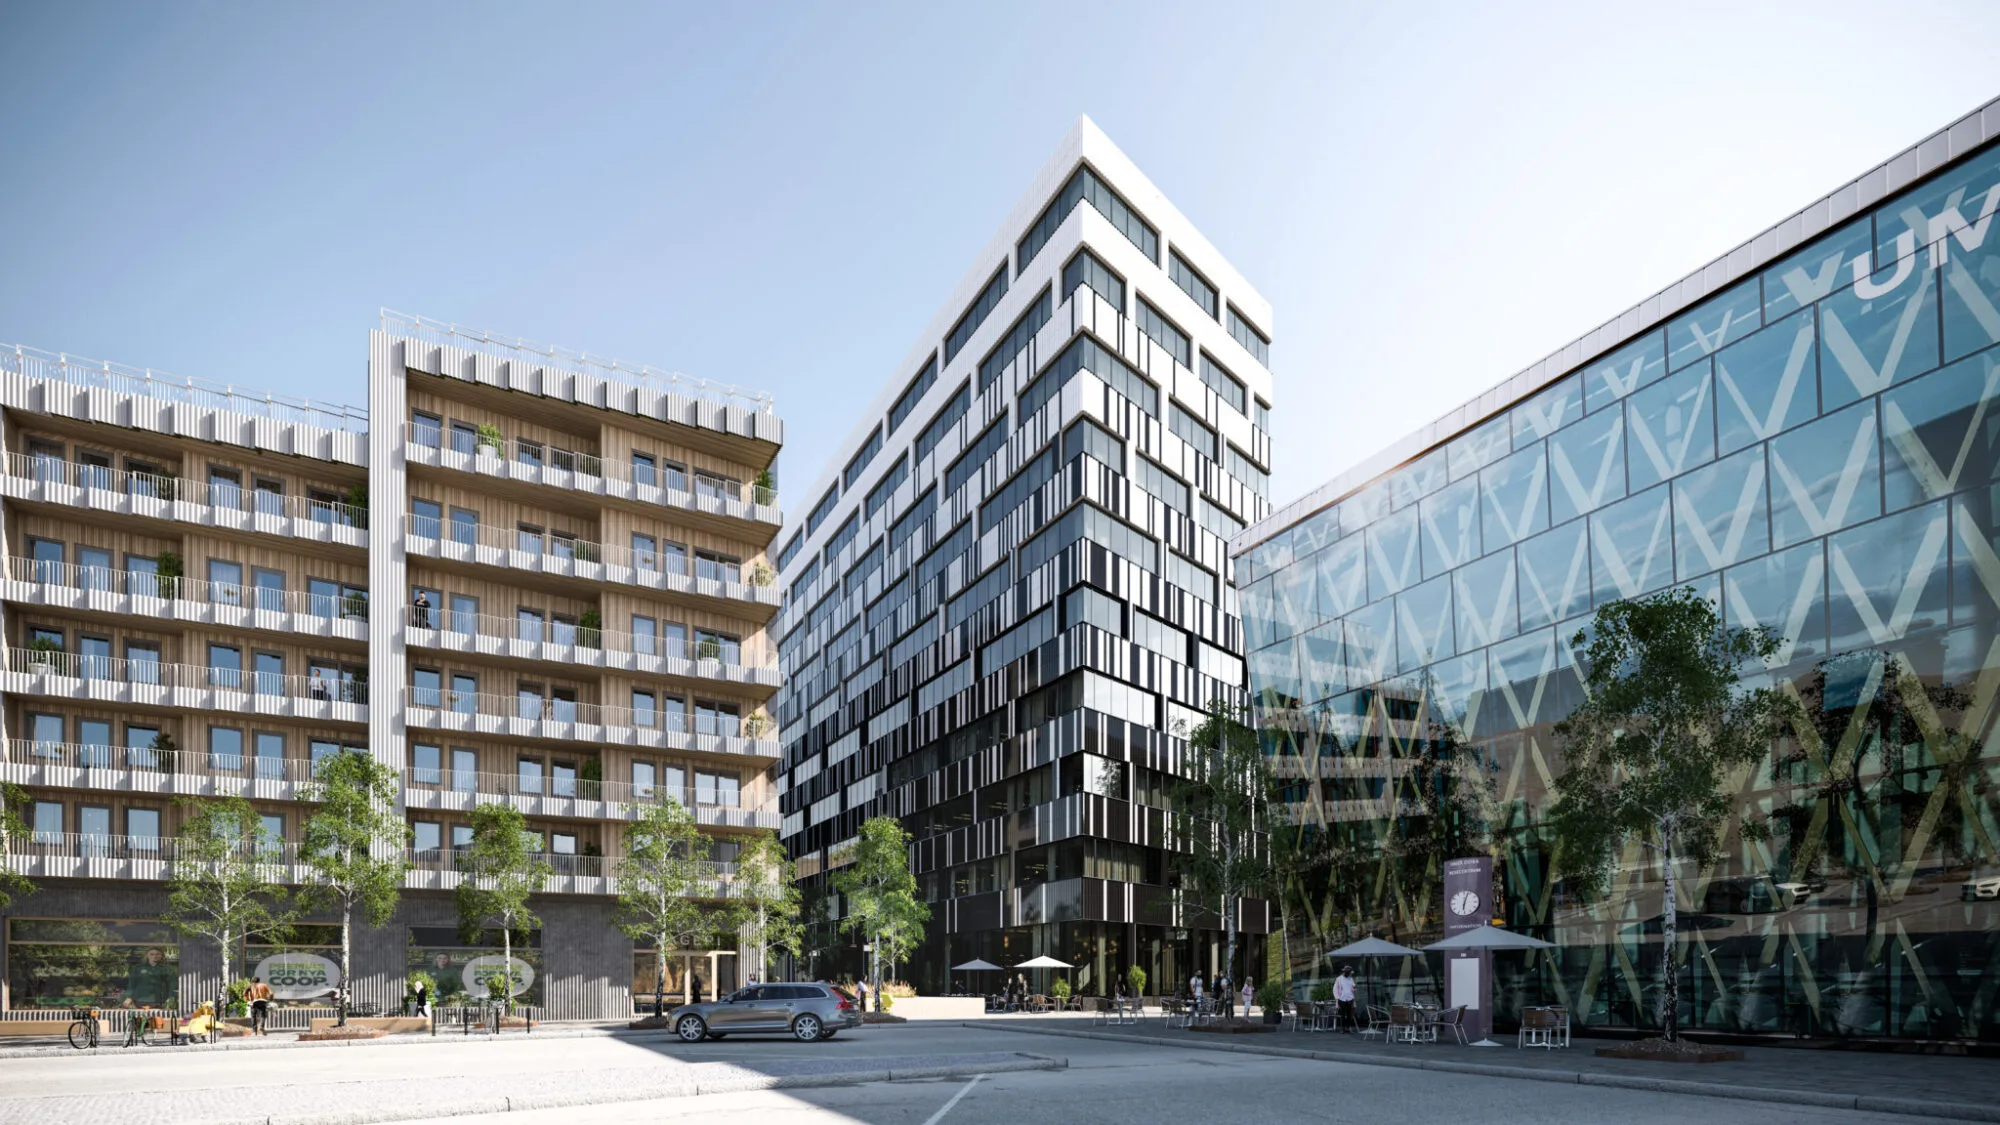 Vinnergi har planerat el- och telelösningar till Sveriges högsta kontorshus i trä